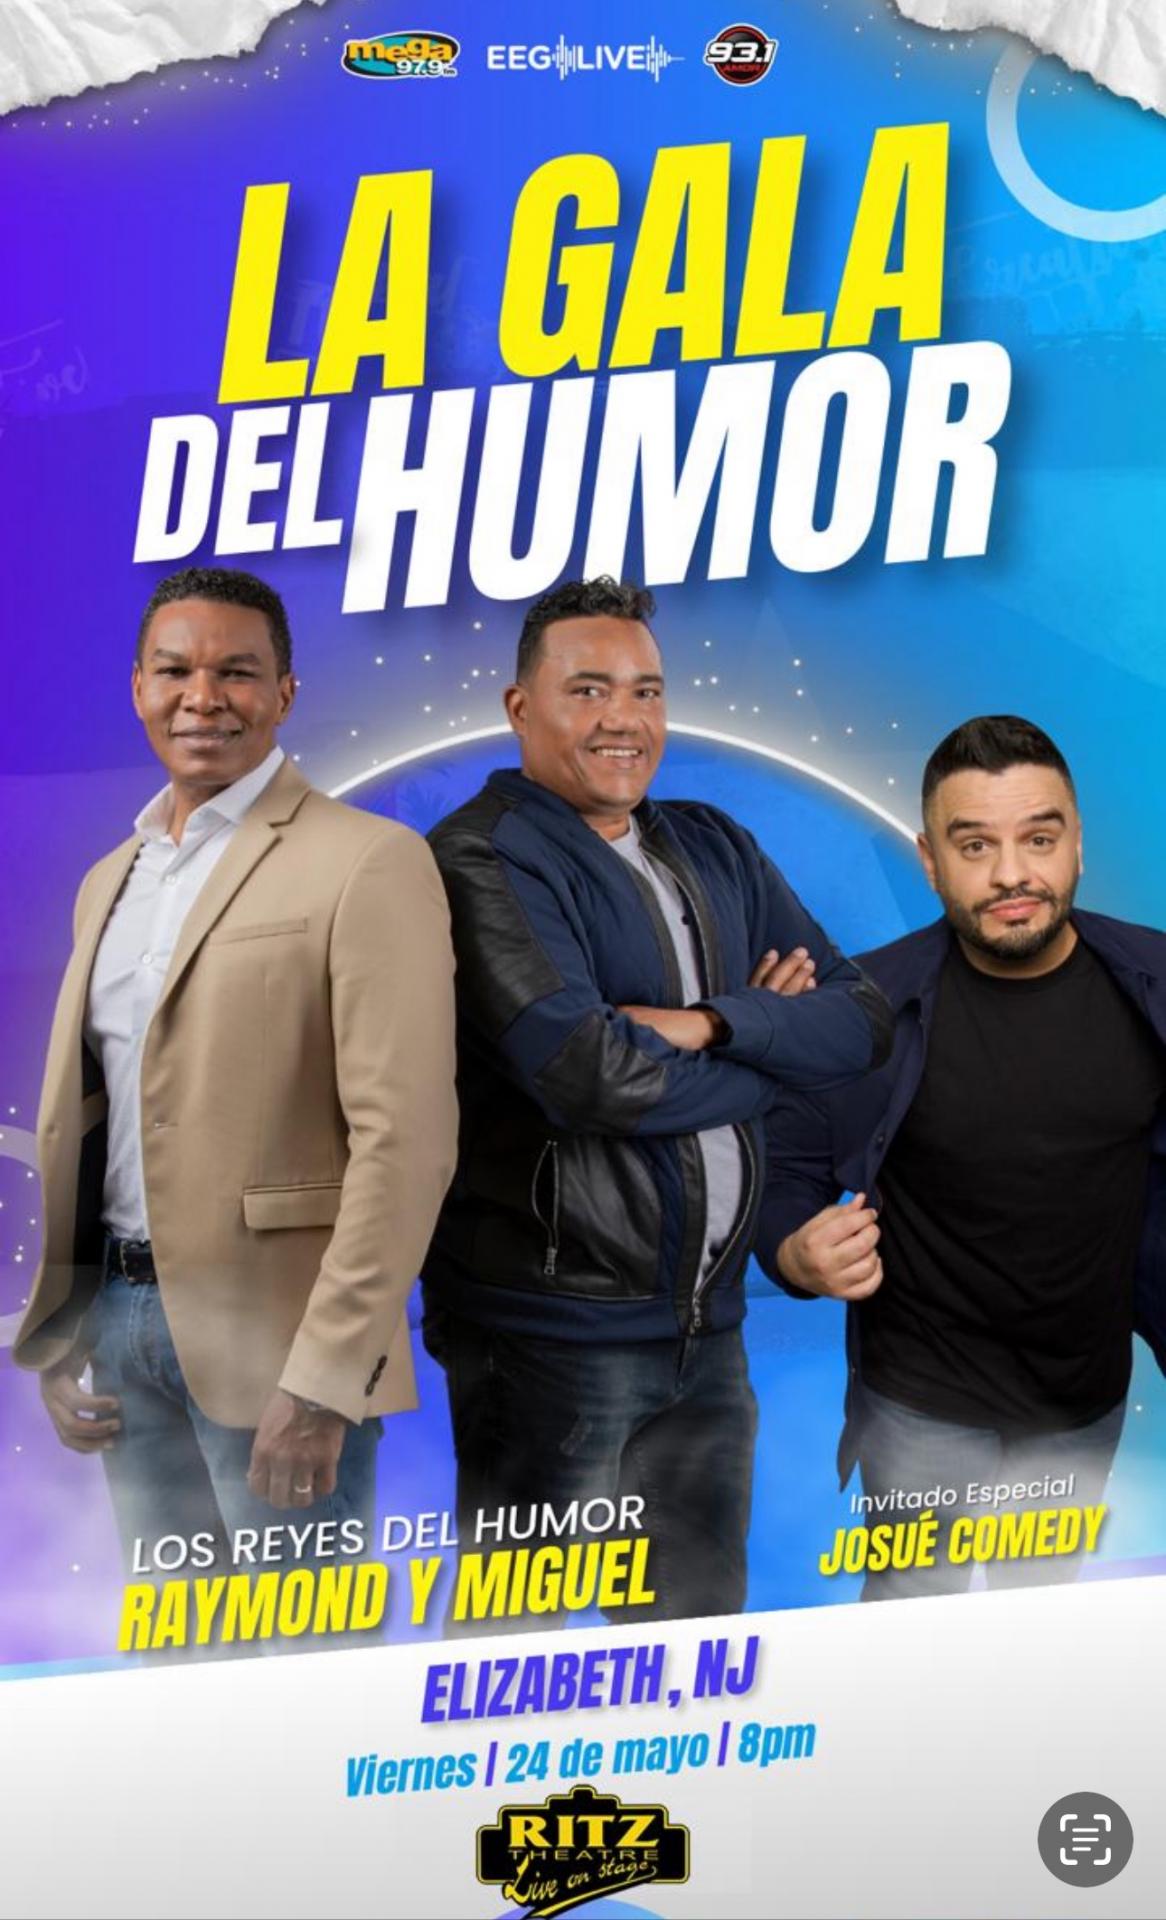 Raymond & Miguel - Gala Del Humor, special guest Josue 